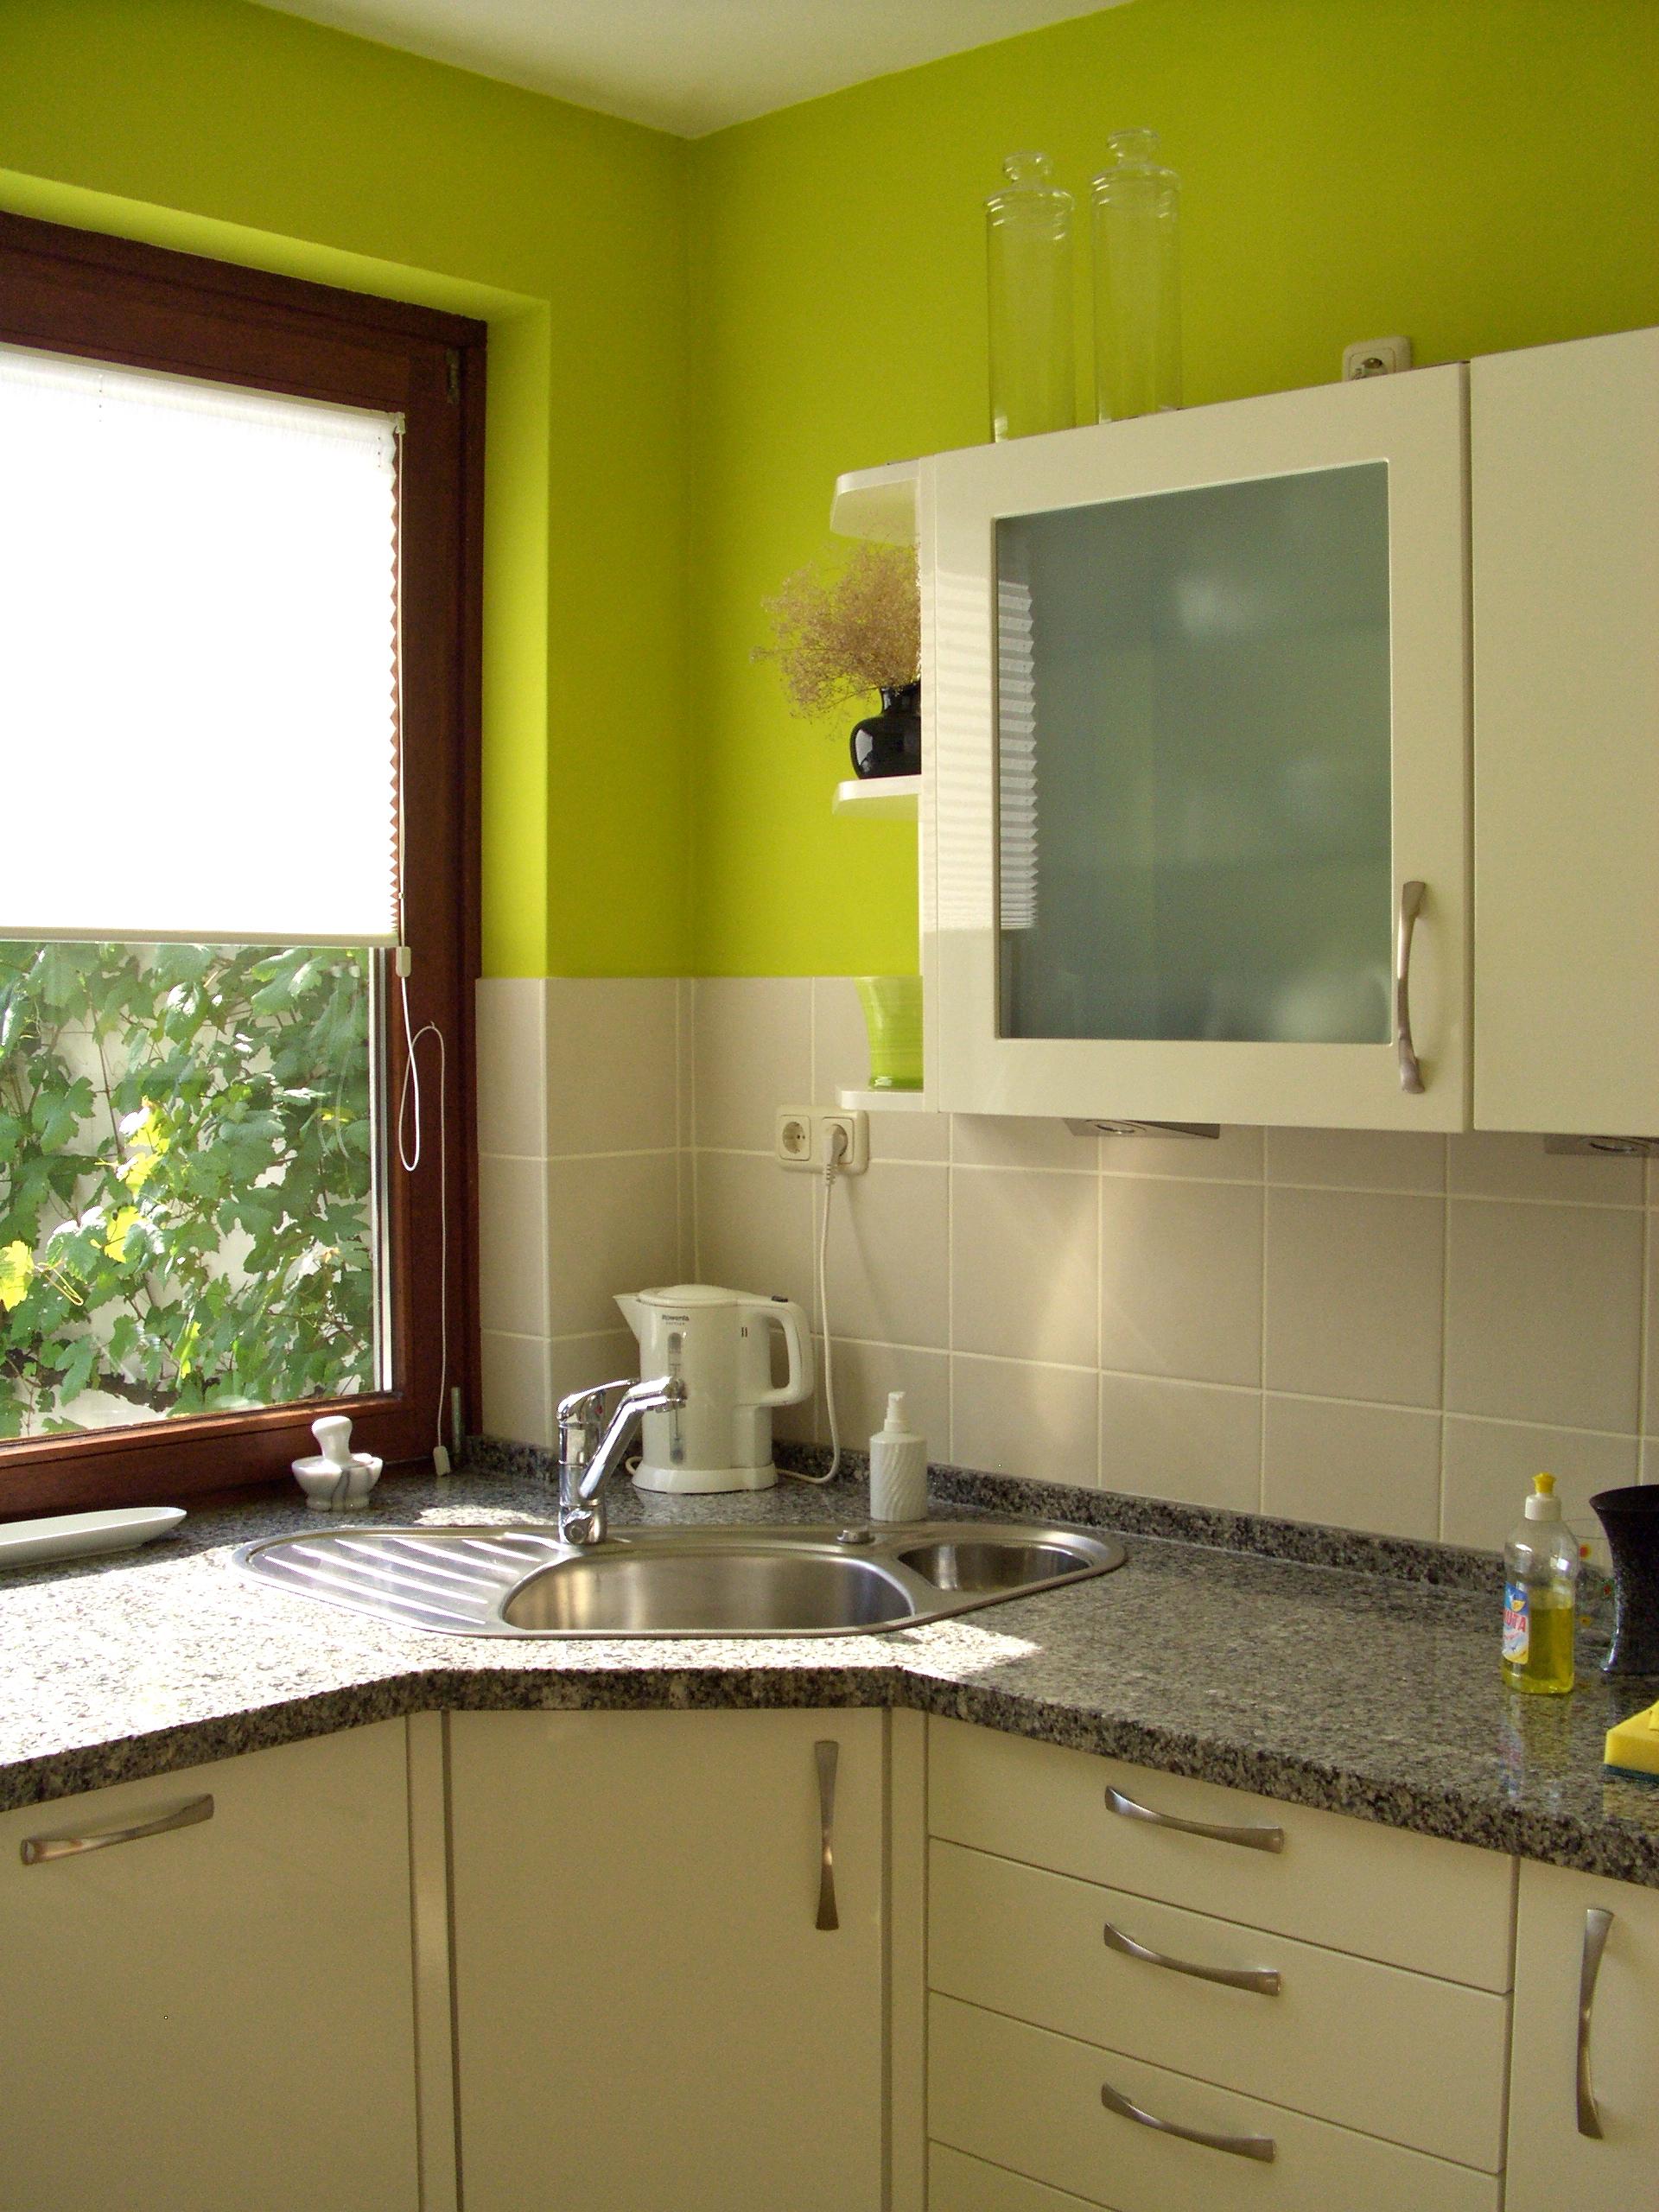 Küche mit Farbe #küche #grünewandfarbe #küchenfront ©Yvonne Habermann